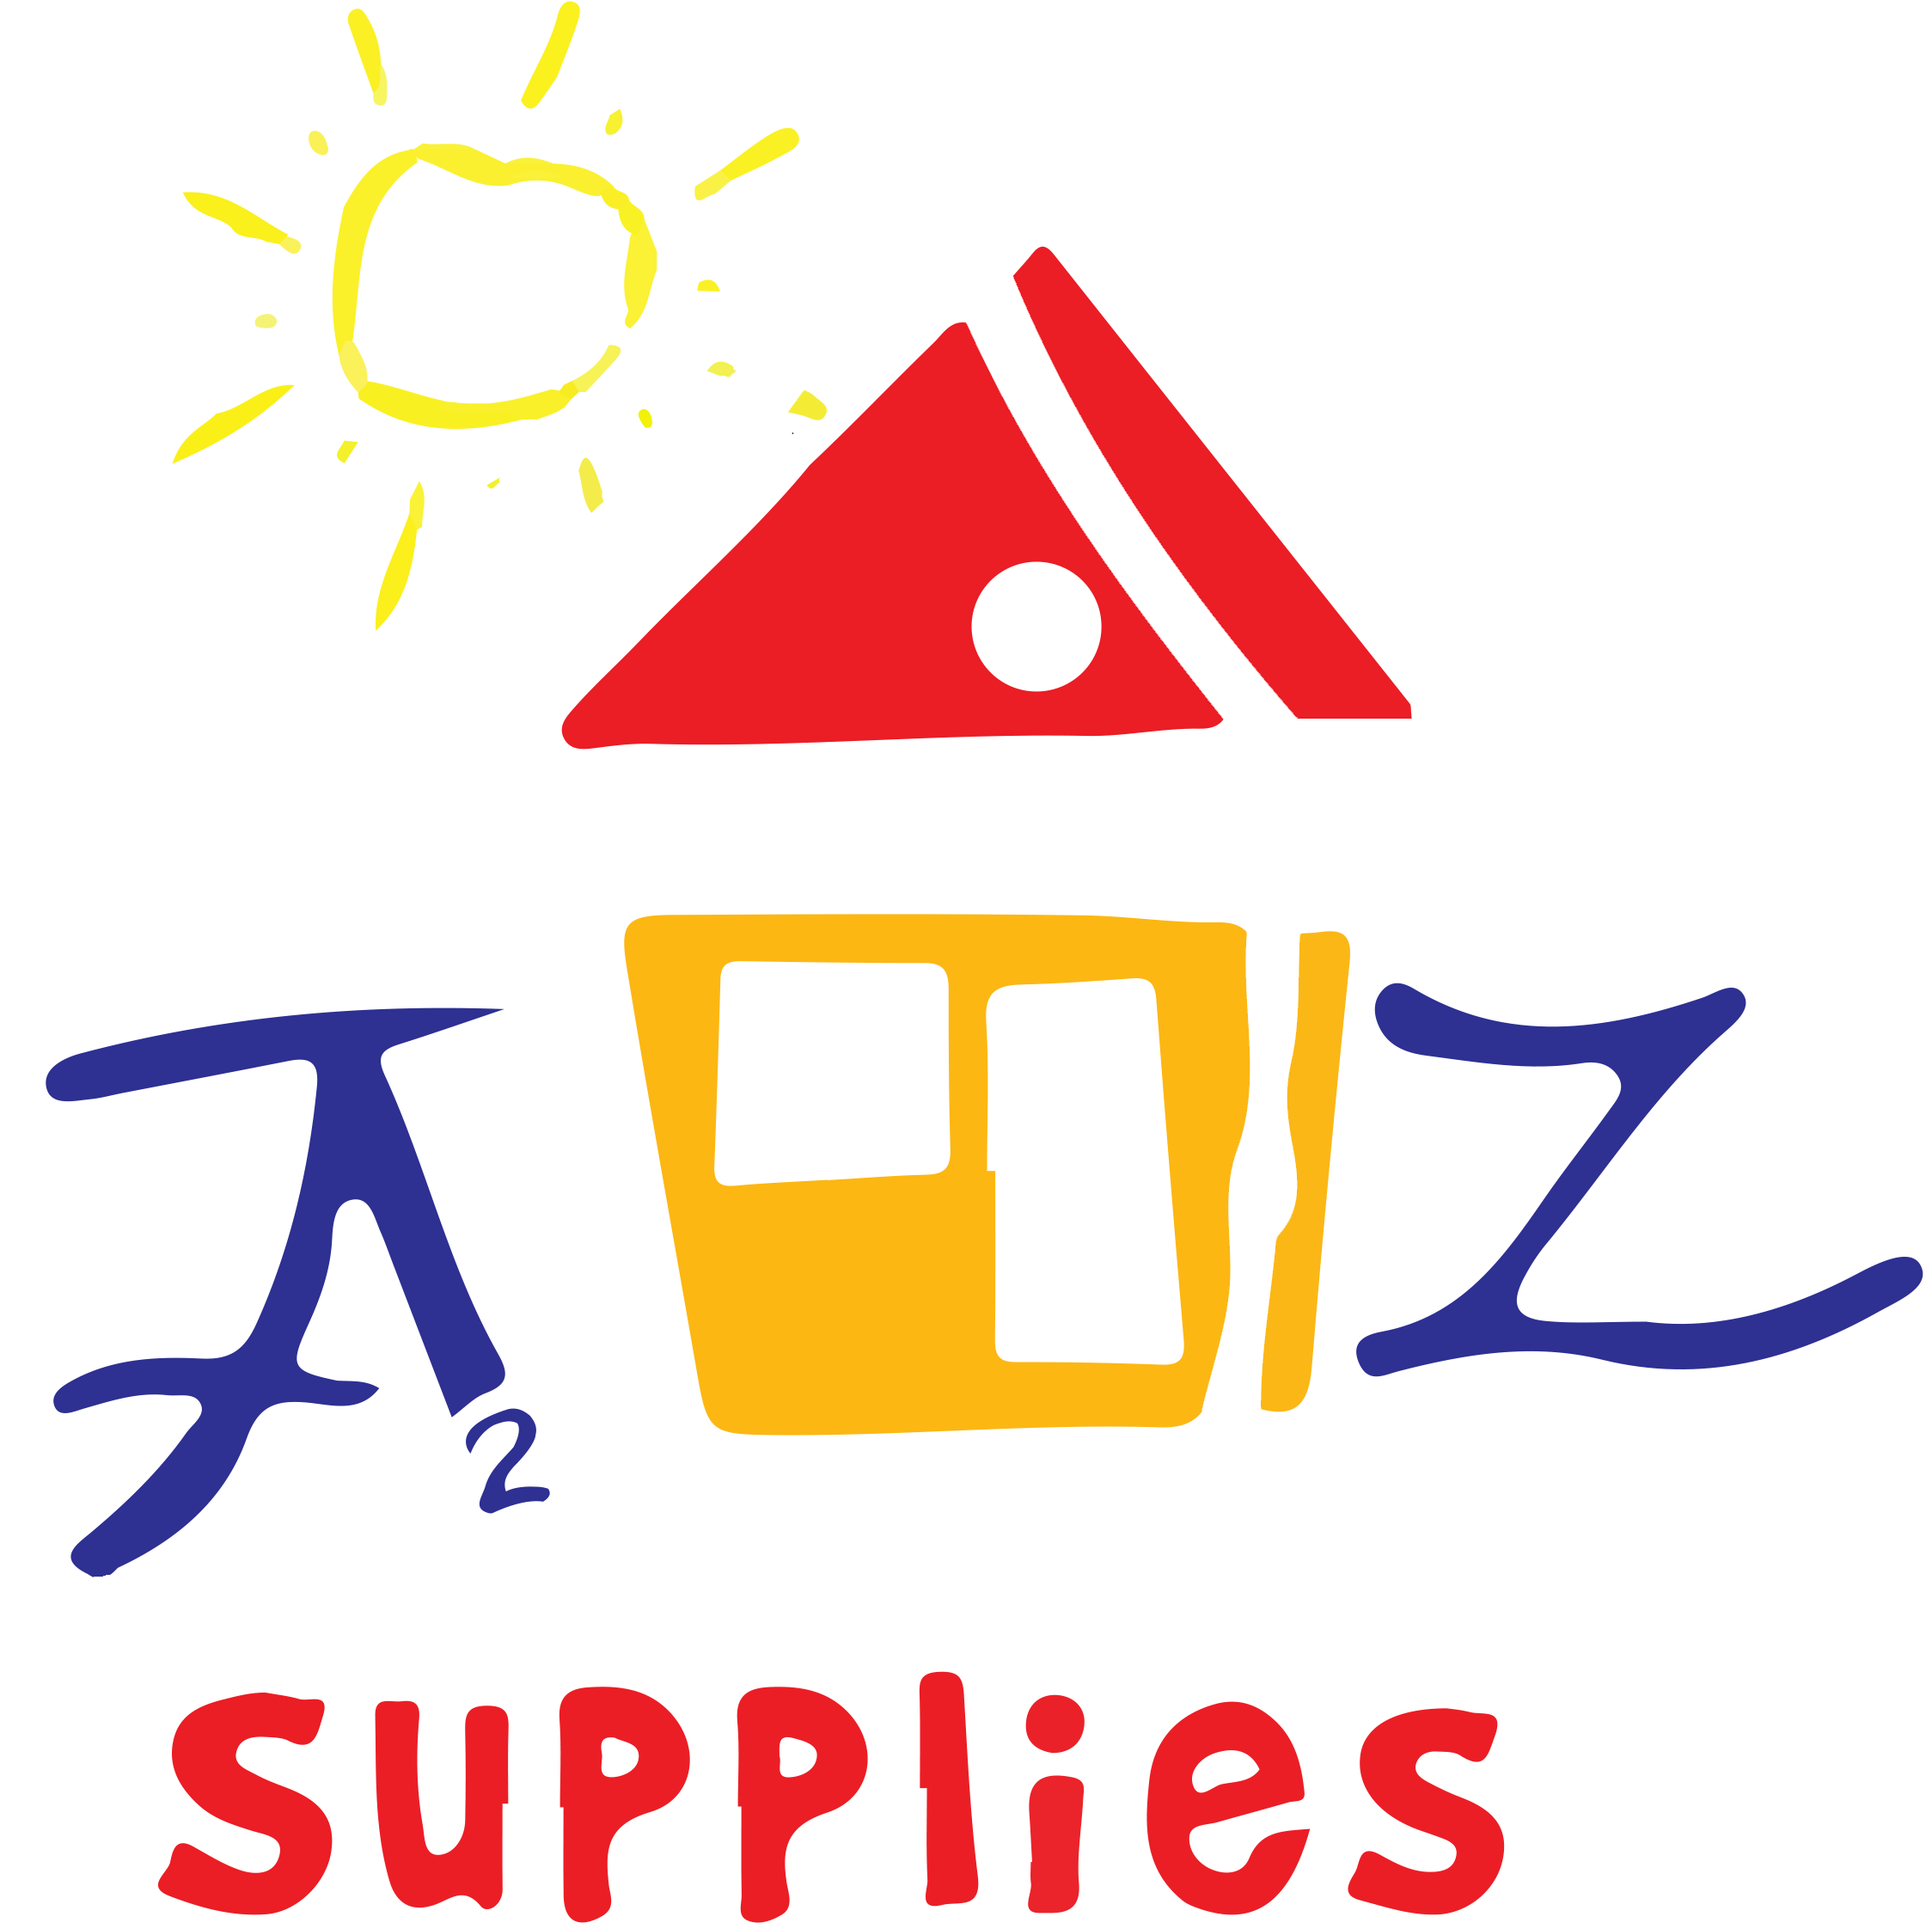 A2Z for supplies website